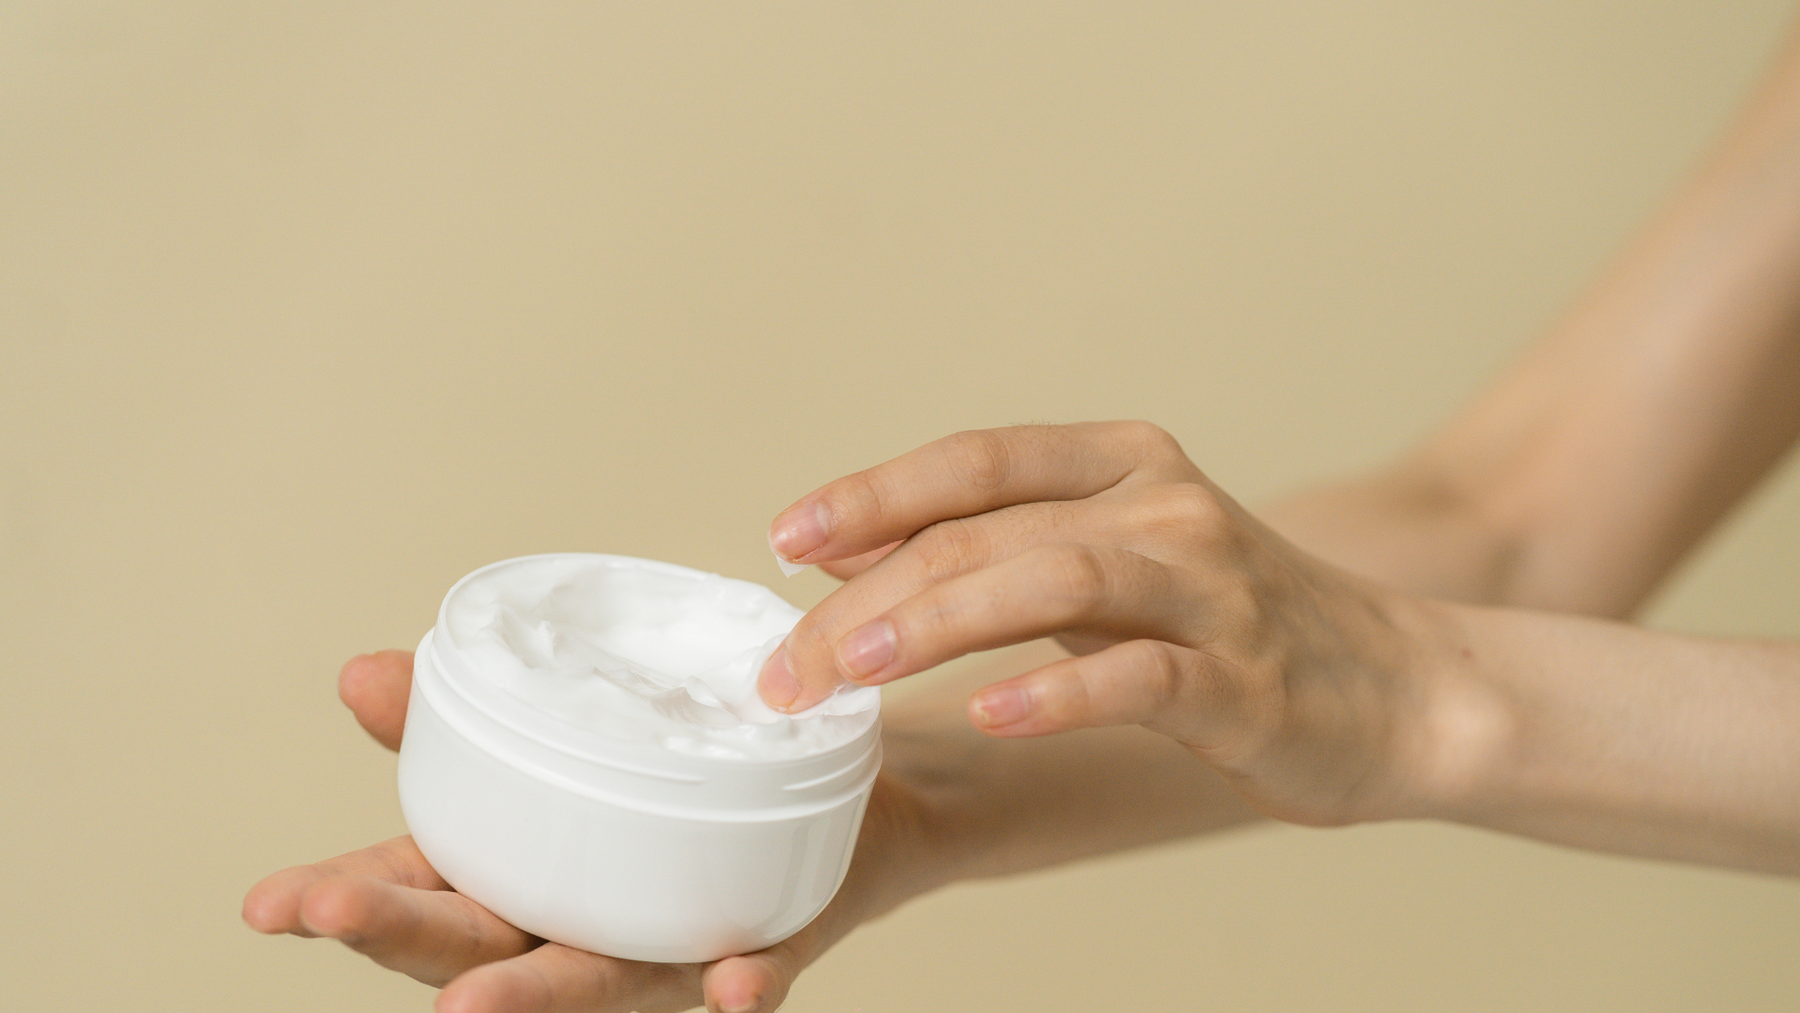 Guía rápida: Elige envases ideales para cremas y mascarillas en 5 pasos